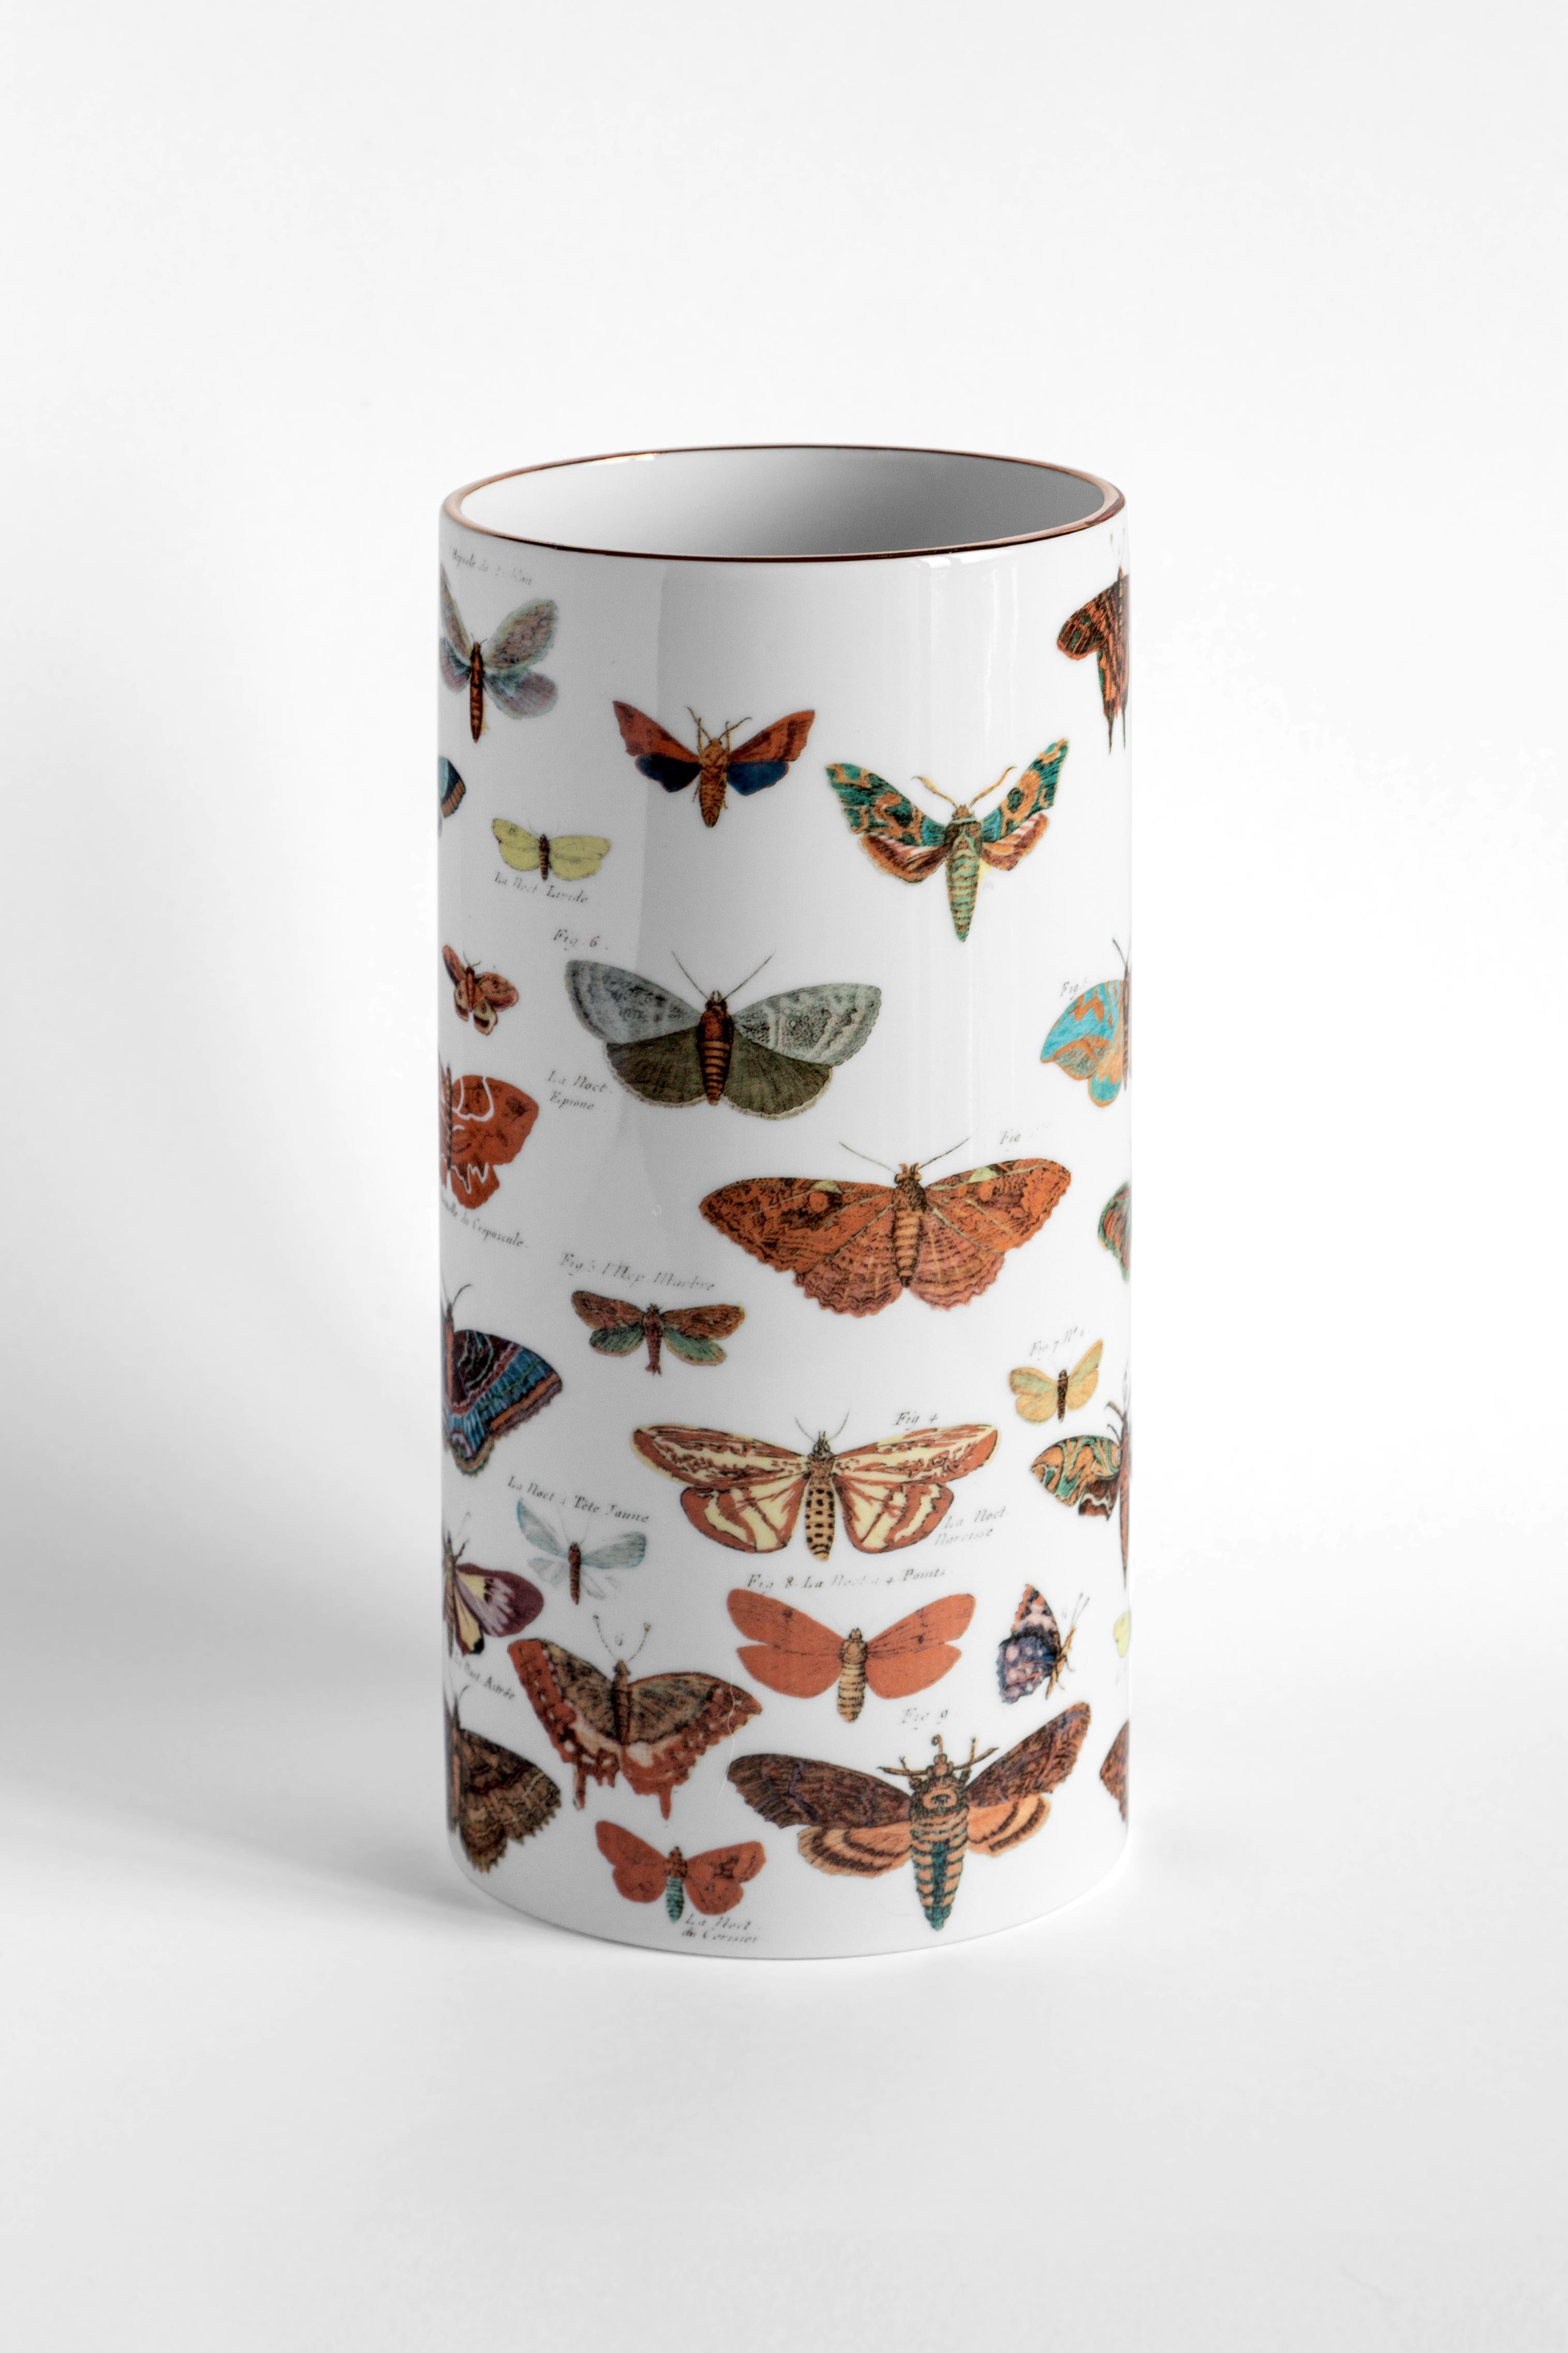 Exposez ce vase en porcelaine avec un papillon ou ajoutez des fleurs pour donner de la vie à cet élément de décoration. Le design rappelle les illustrations d'un livre de lépidoptérologie ancien et fait de ce vase l'objet de décoration idéal pour